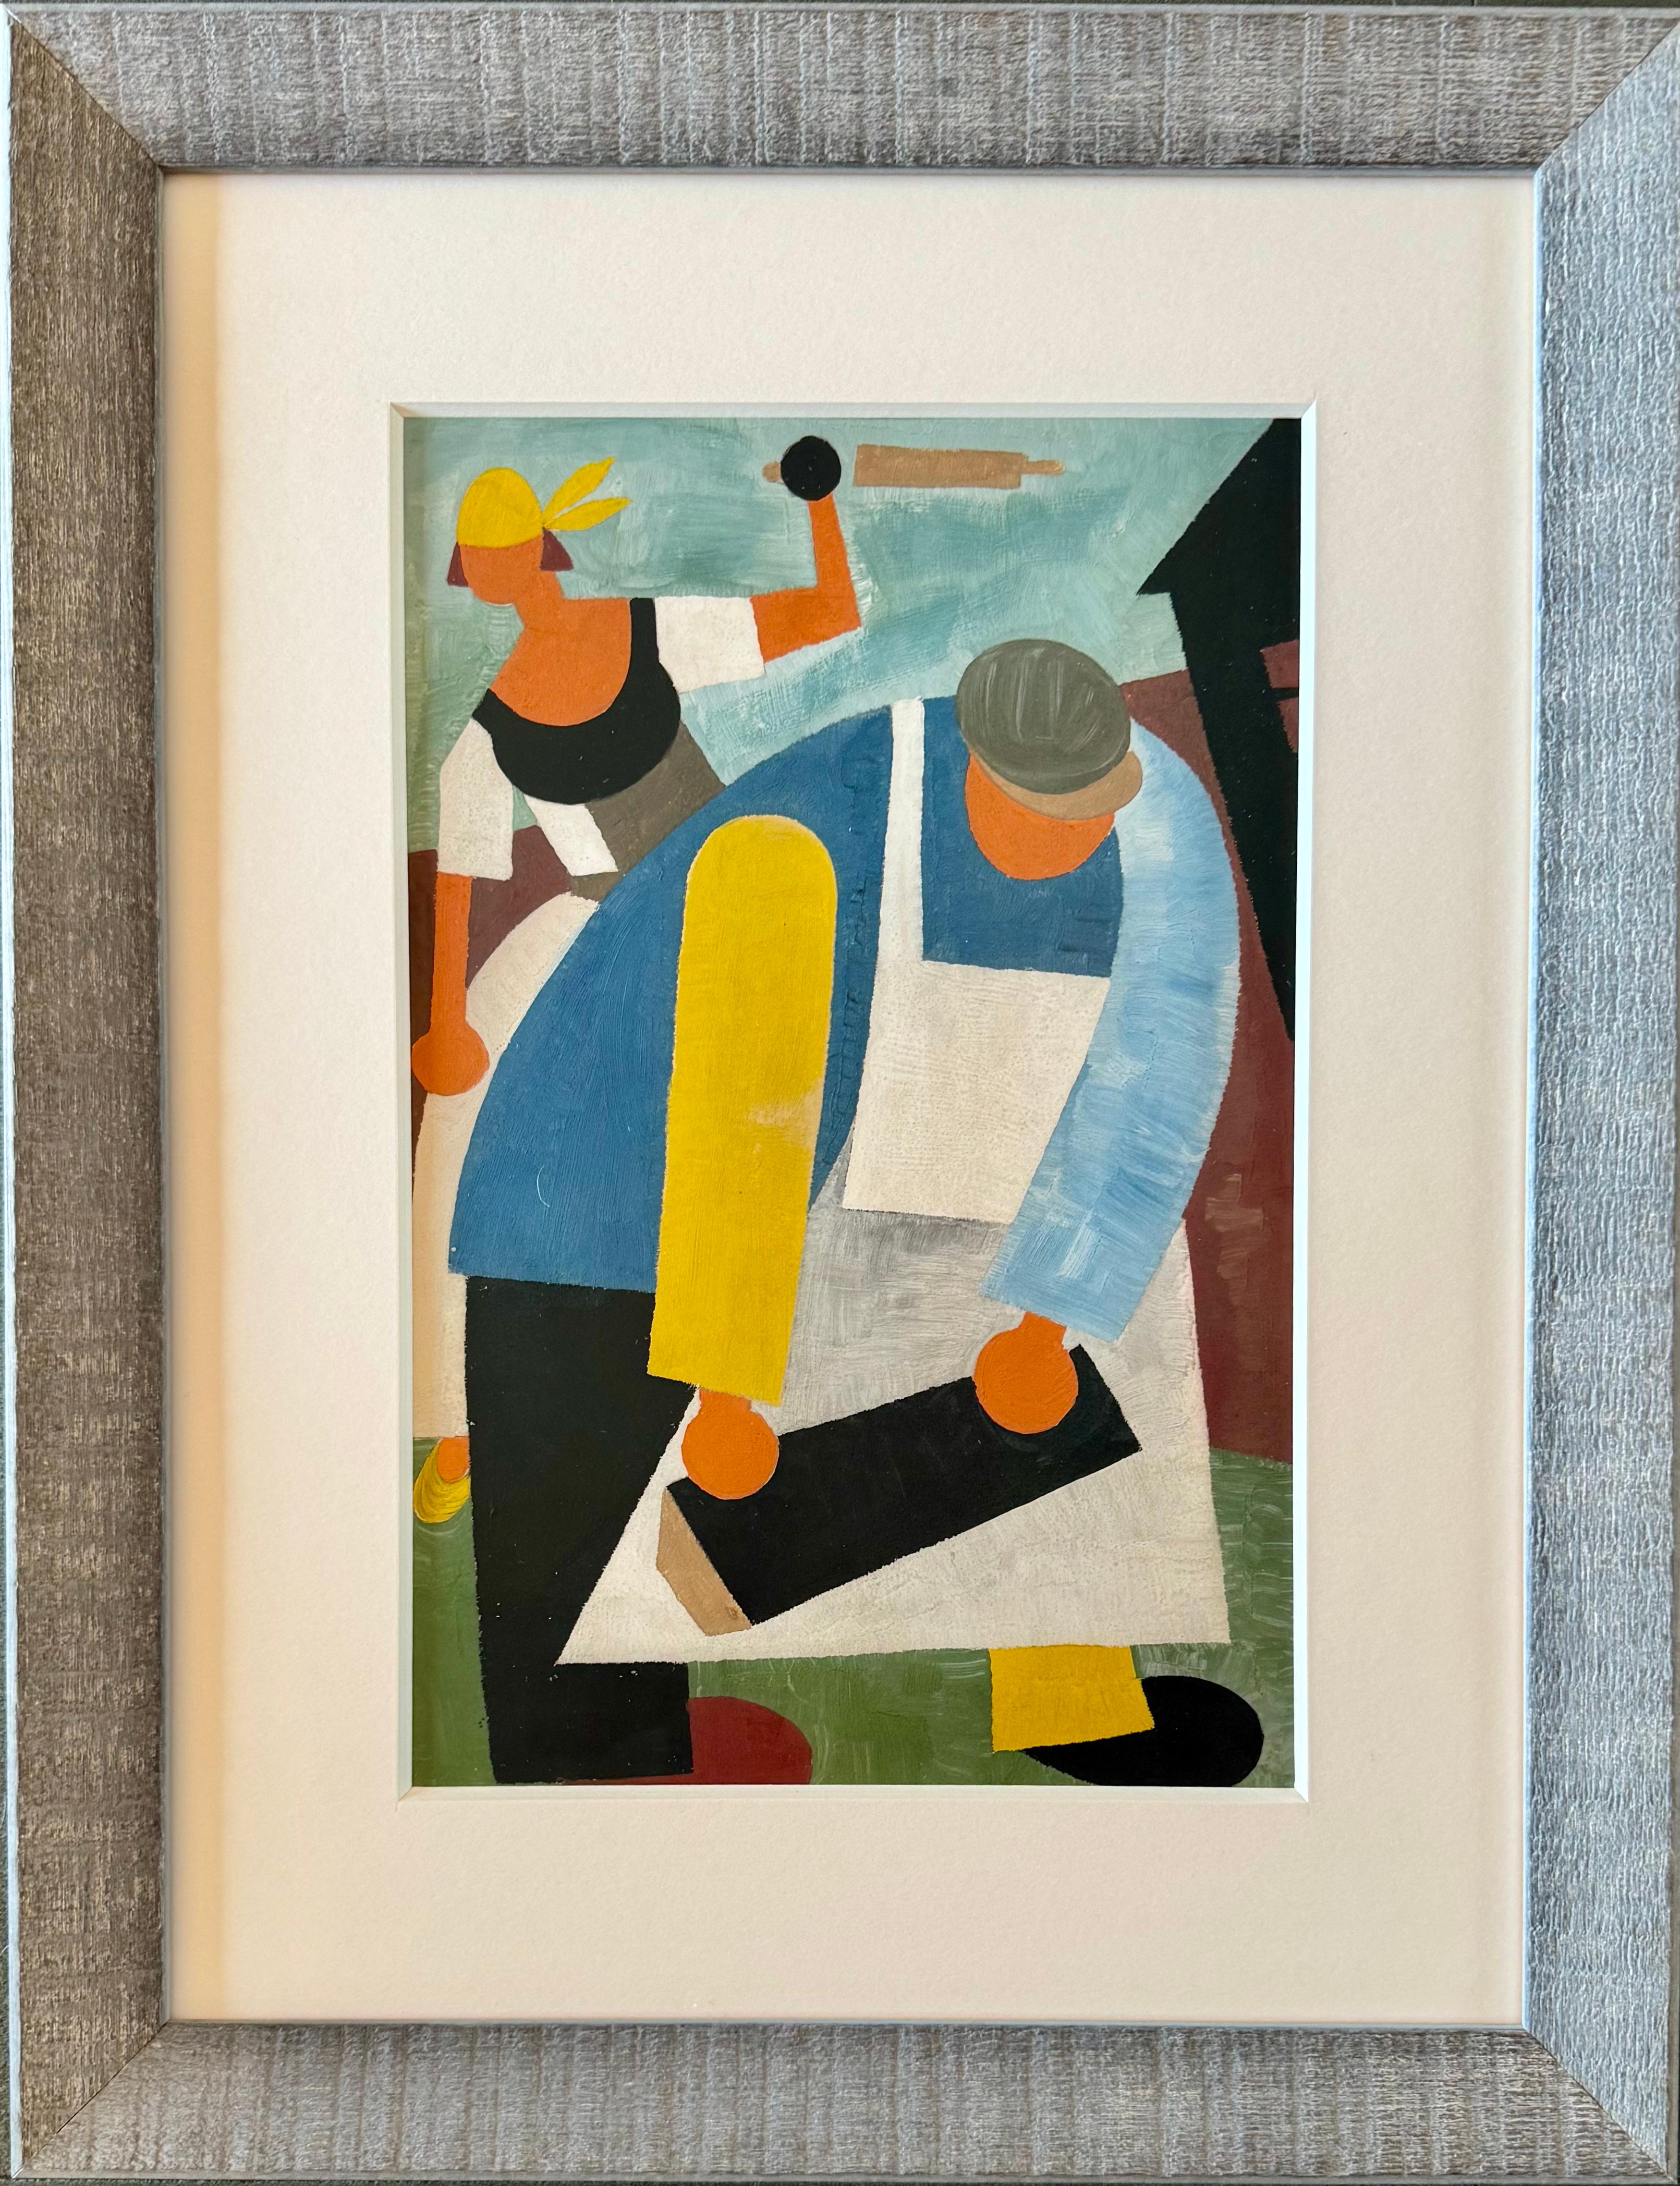 „Workers“, russischer Konstruktivismus, 1920er Jahre, Moderner sozialer Realismus, Kubismus, Figurativ

WLADIMIR VASIL'EVICH LEBEDEV (1891-1967)
